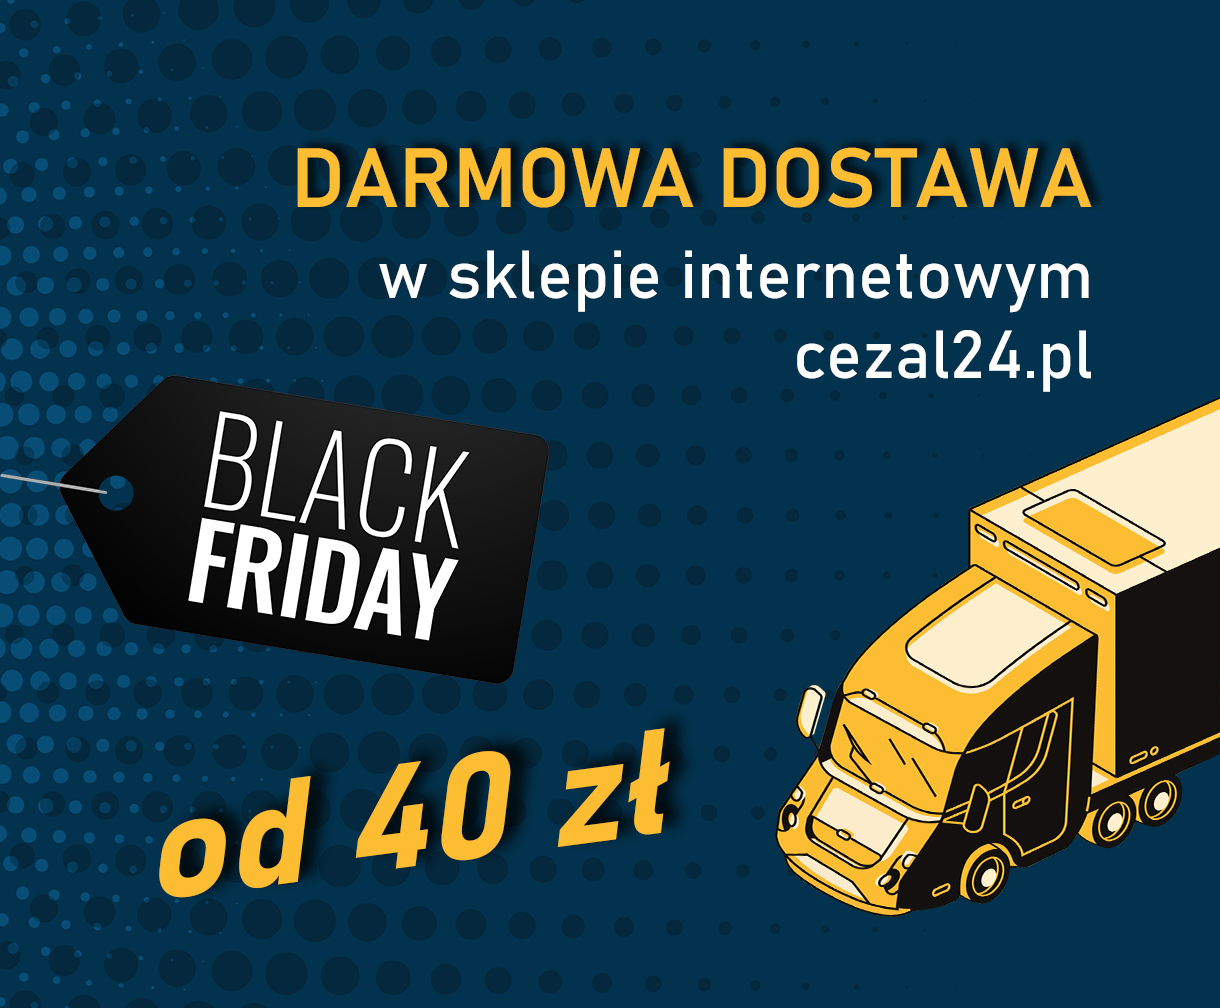 Black Friday na cezal24.pl